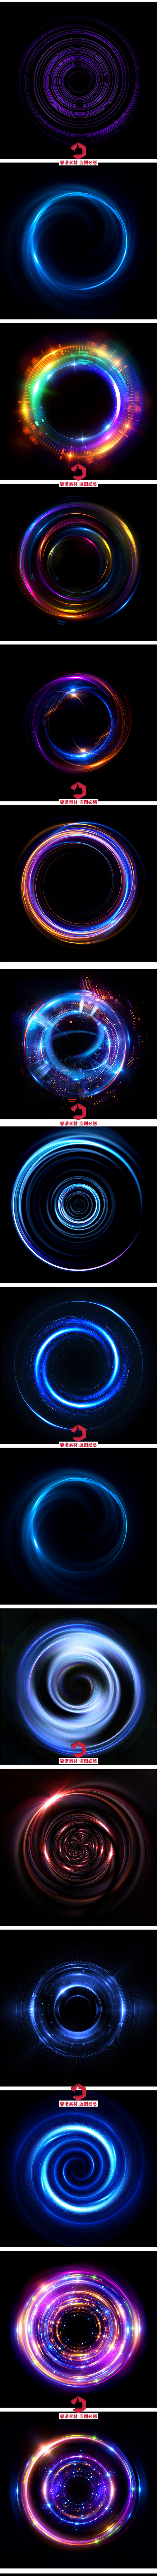 蓝色闪耀螺旋光圈圆圈高清背景图片设计素材...